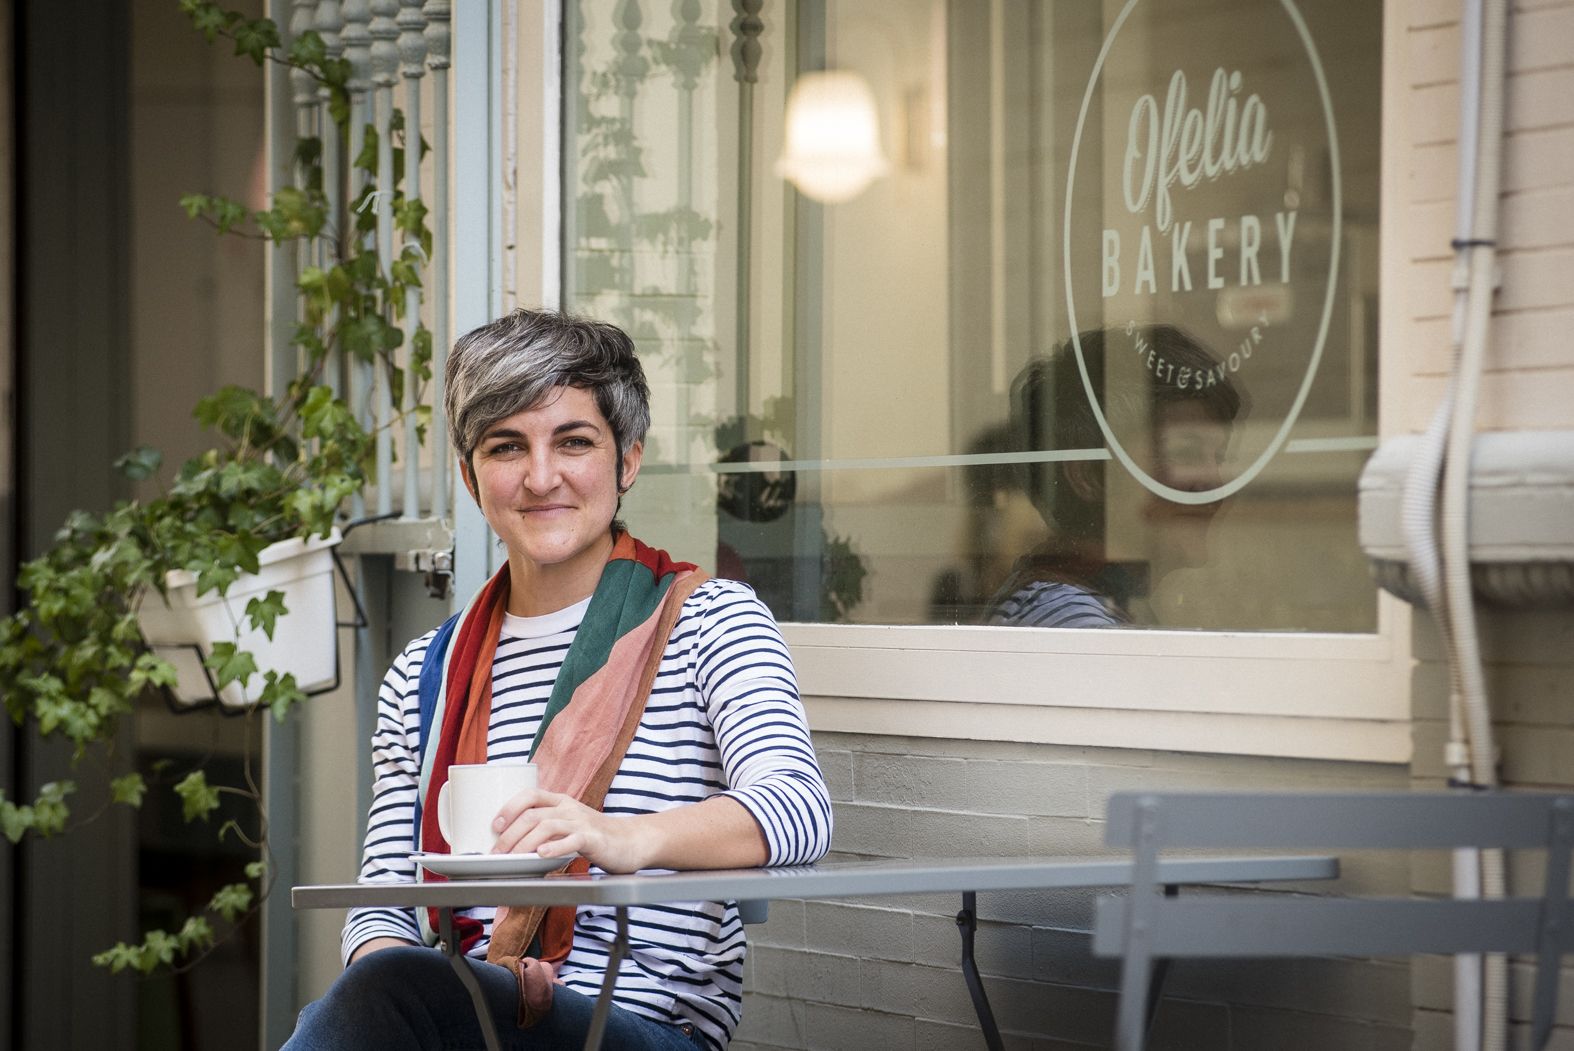 La algecireña Elena Garcés regente en la Alfalfa su propio negocio de desayunos y meriendas artesanas, Ofelia Bakery.